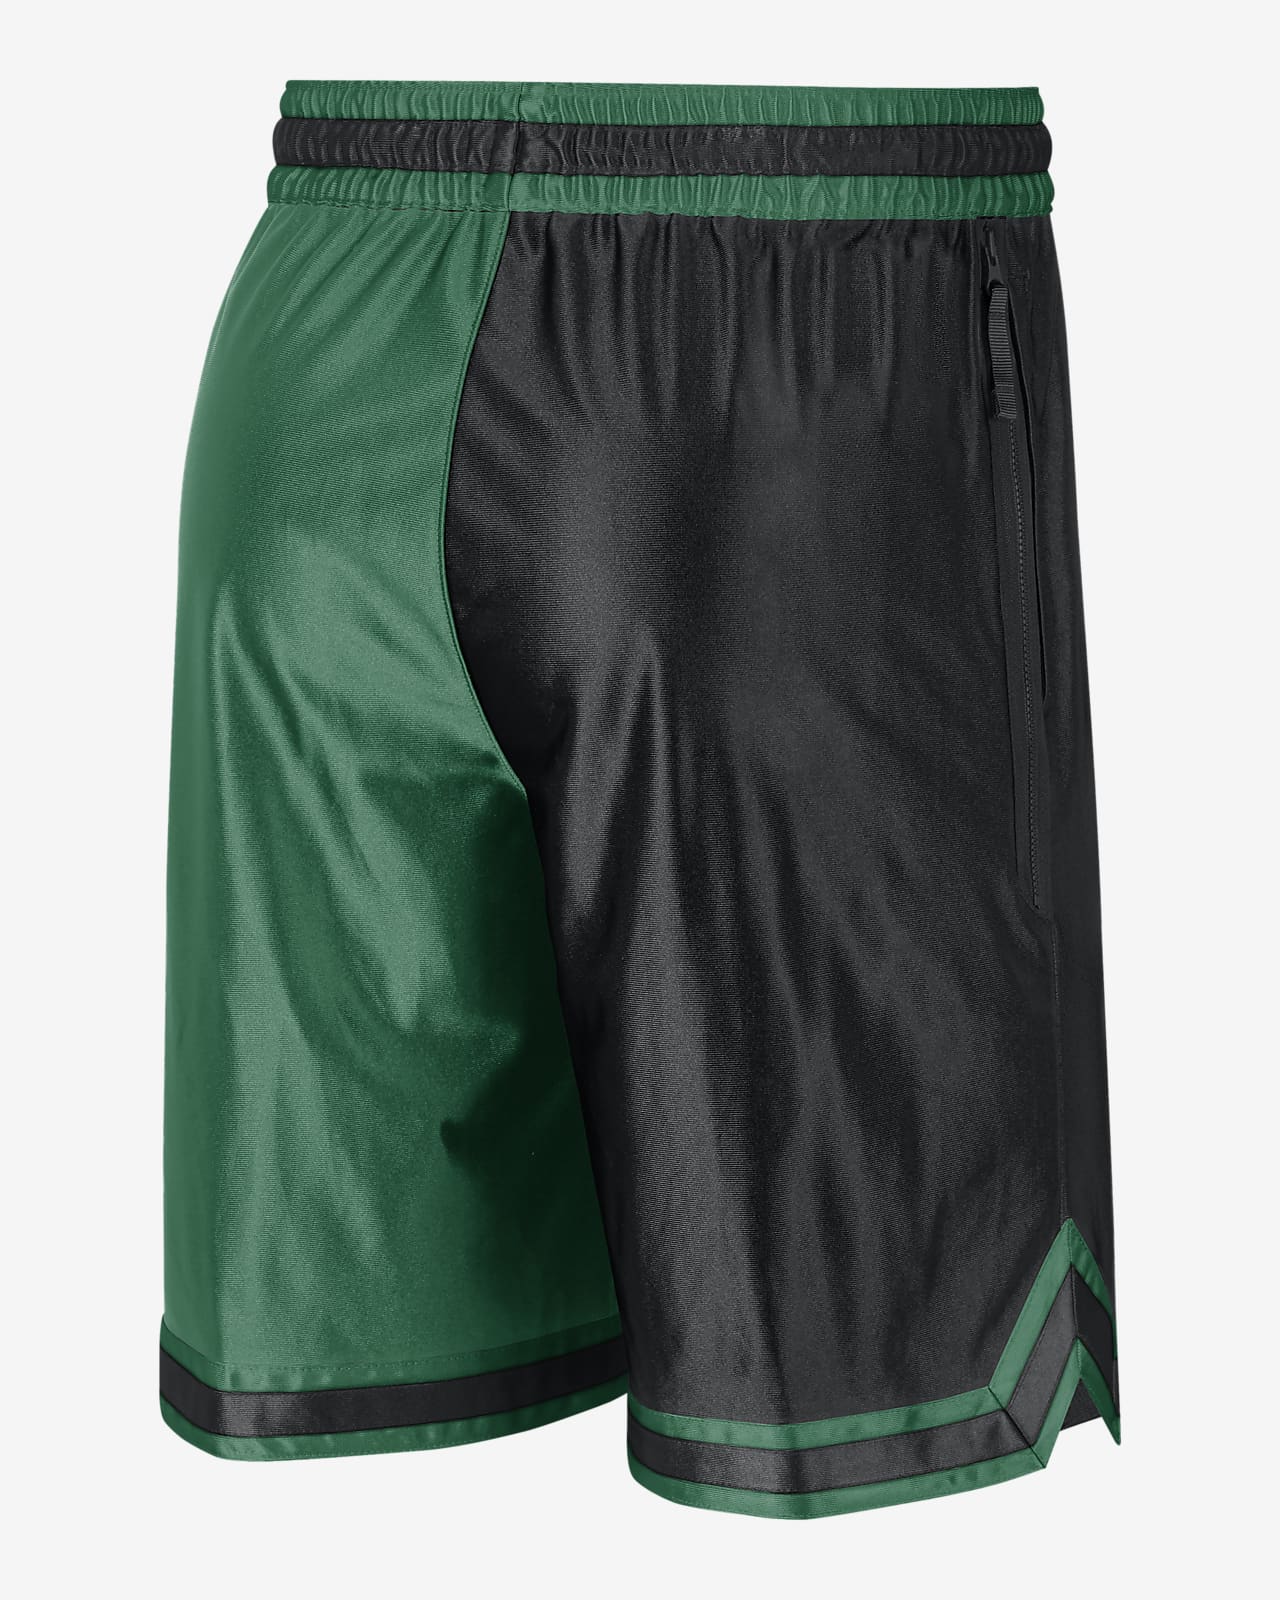 Boston Celtics Courtside Men's Nike Dri-FIT NBA Graphic Shorts.